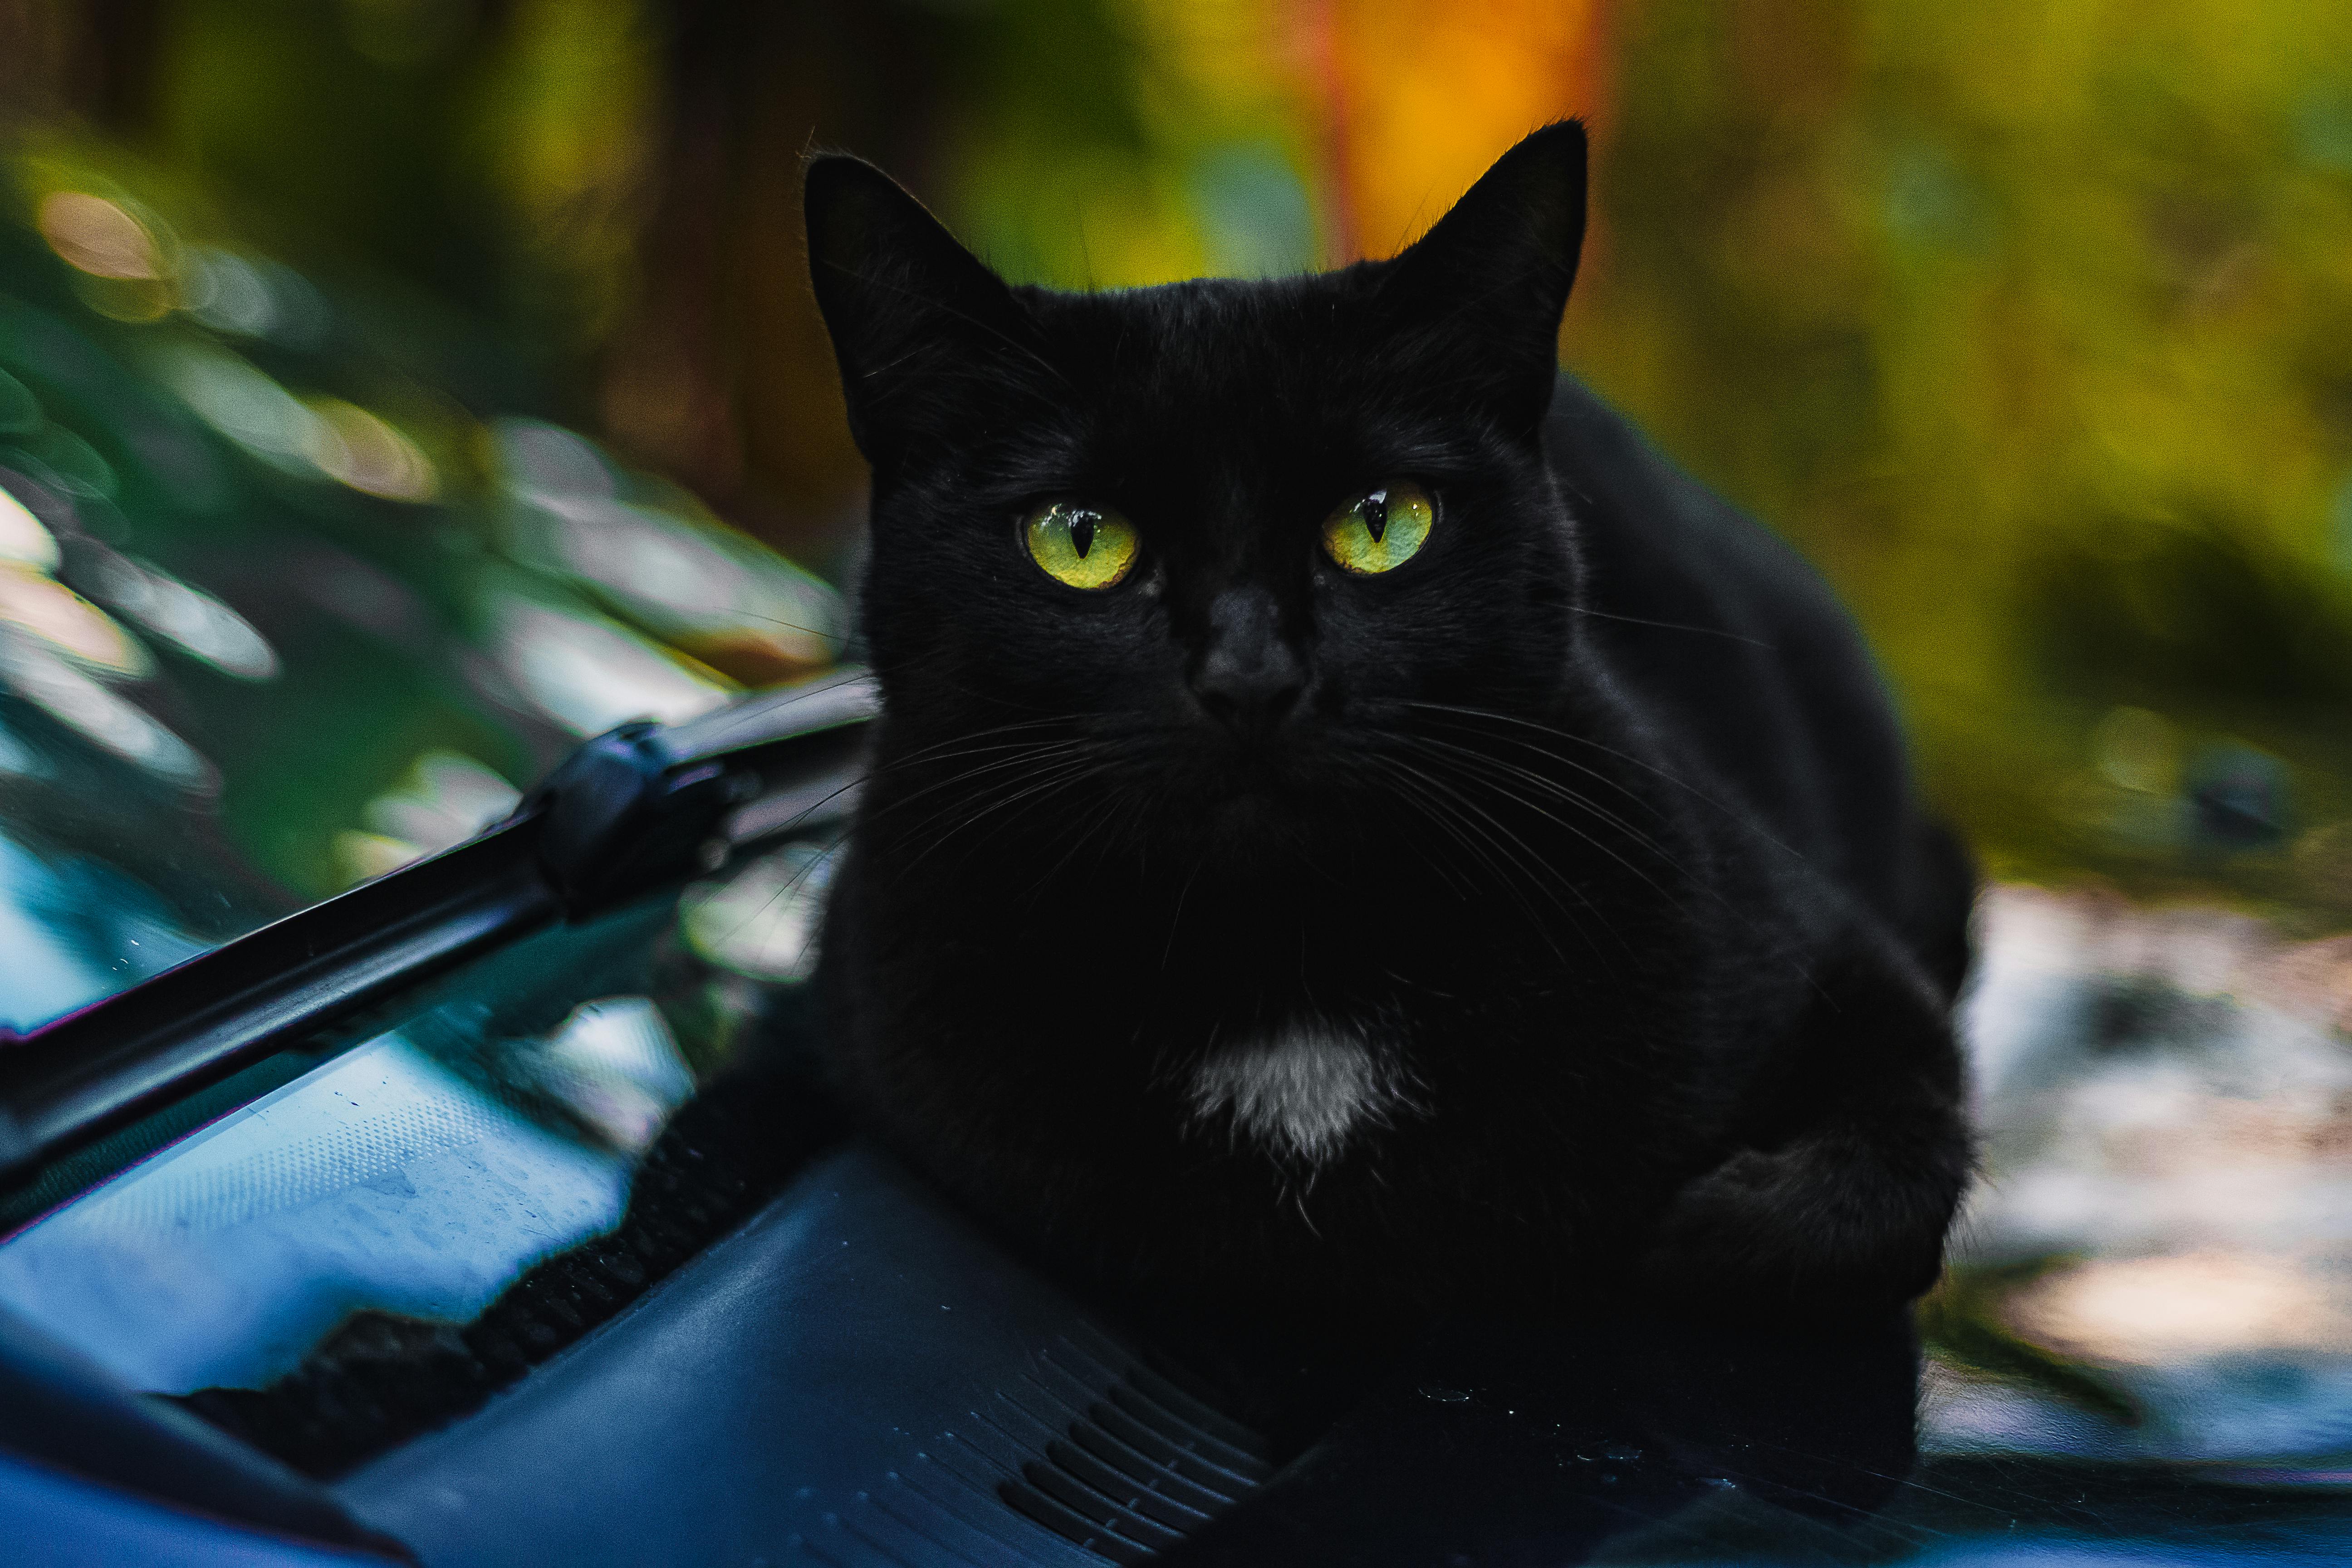 Hãy đến và chiêm ngưỡng hình ảnh của chú mèo đen đáng yêu này. Với bộ lông xanh đen sang trọng cùng đôi mắt xanh tươi sáng, chú mèo sẽ chắc chắn khiến bạn \'mê mẩn\' ngay từ cái nhìn đầu tiên.